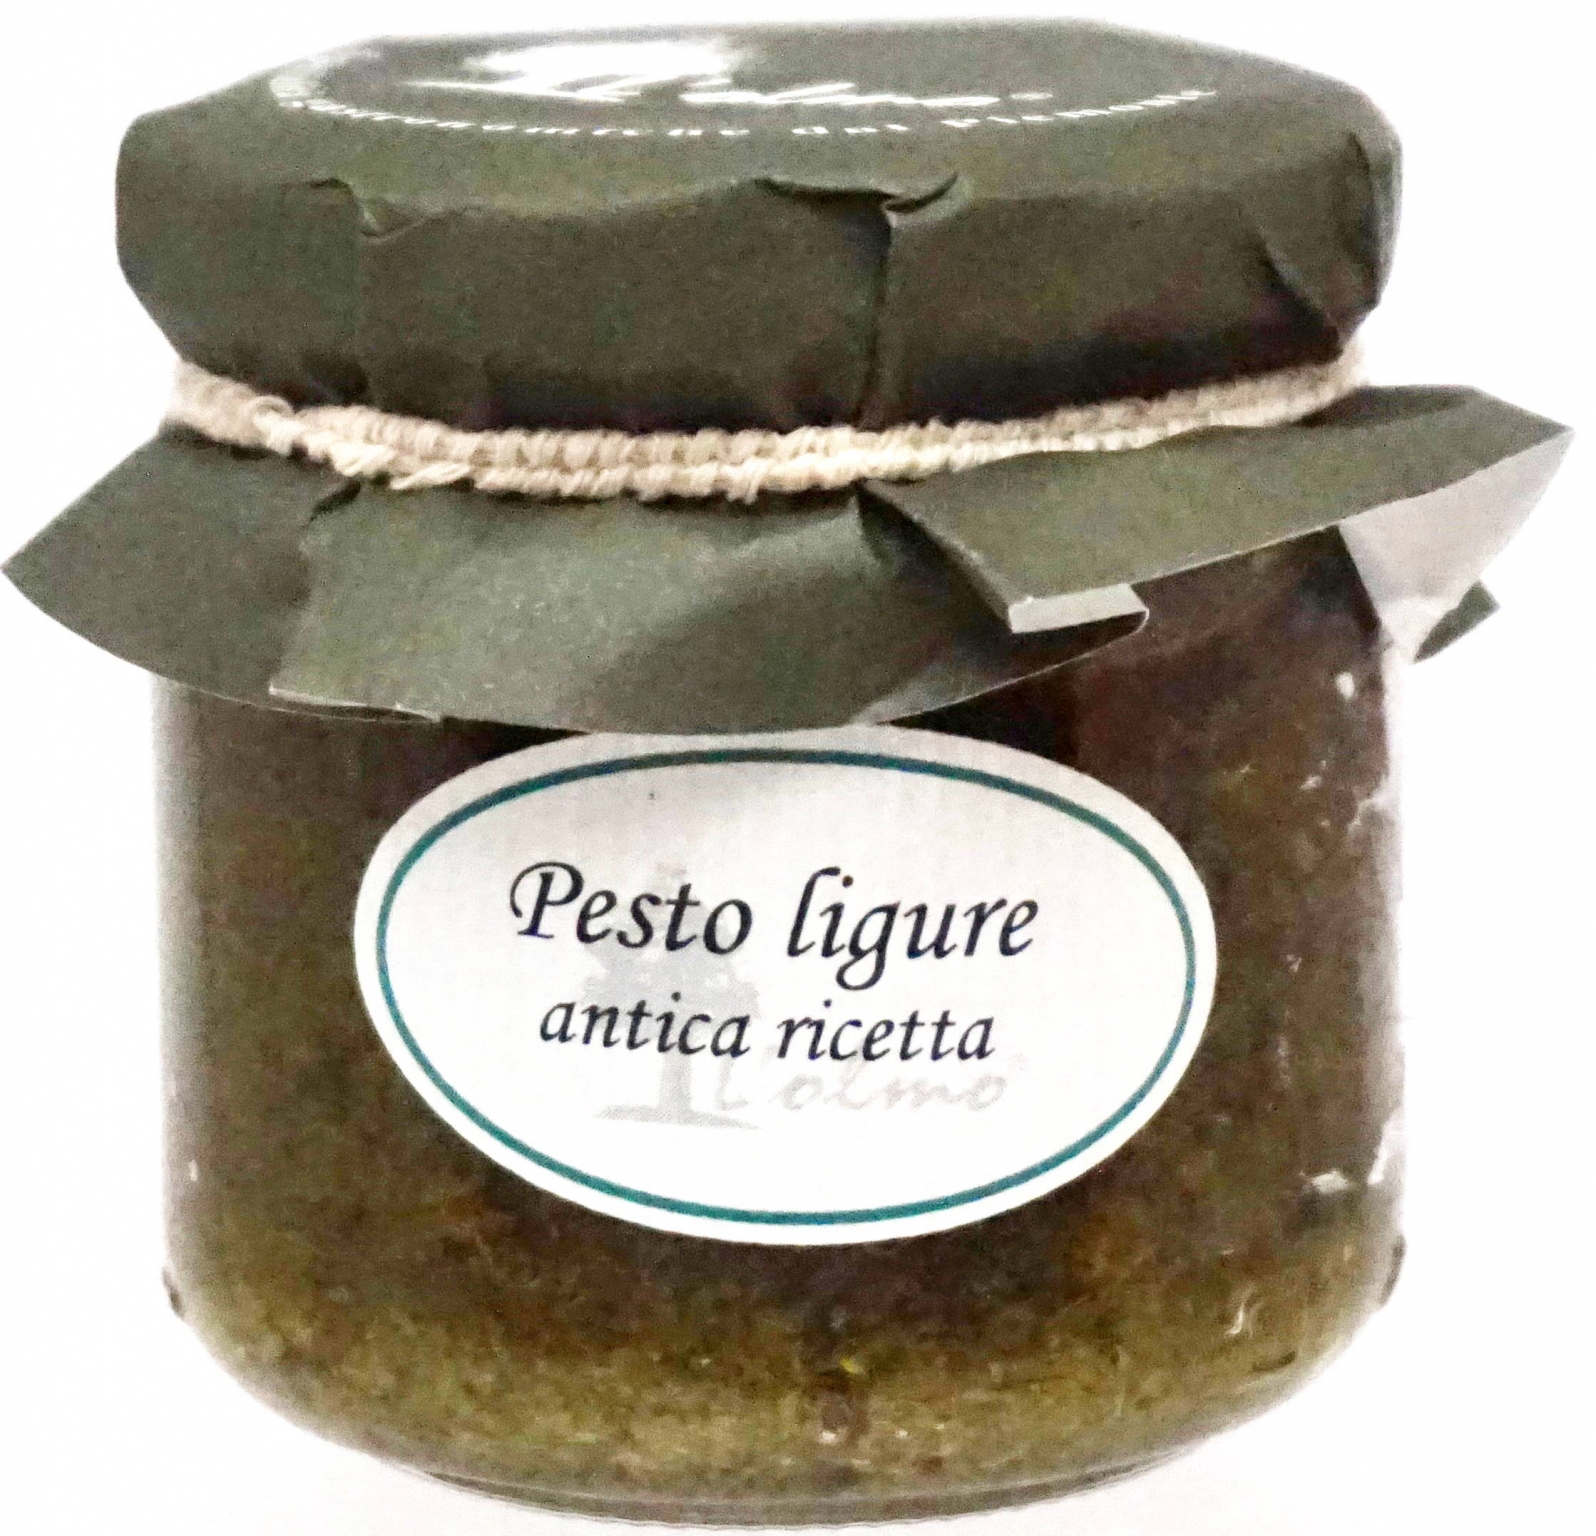 Pesto ligure antica ricetta